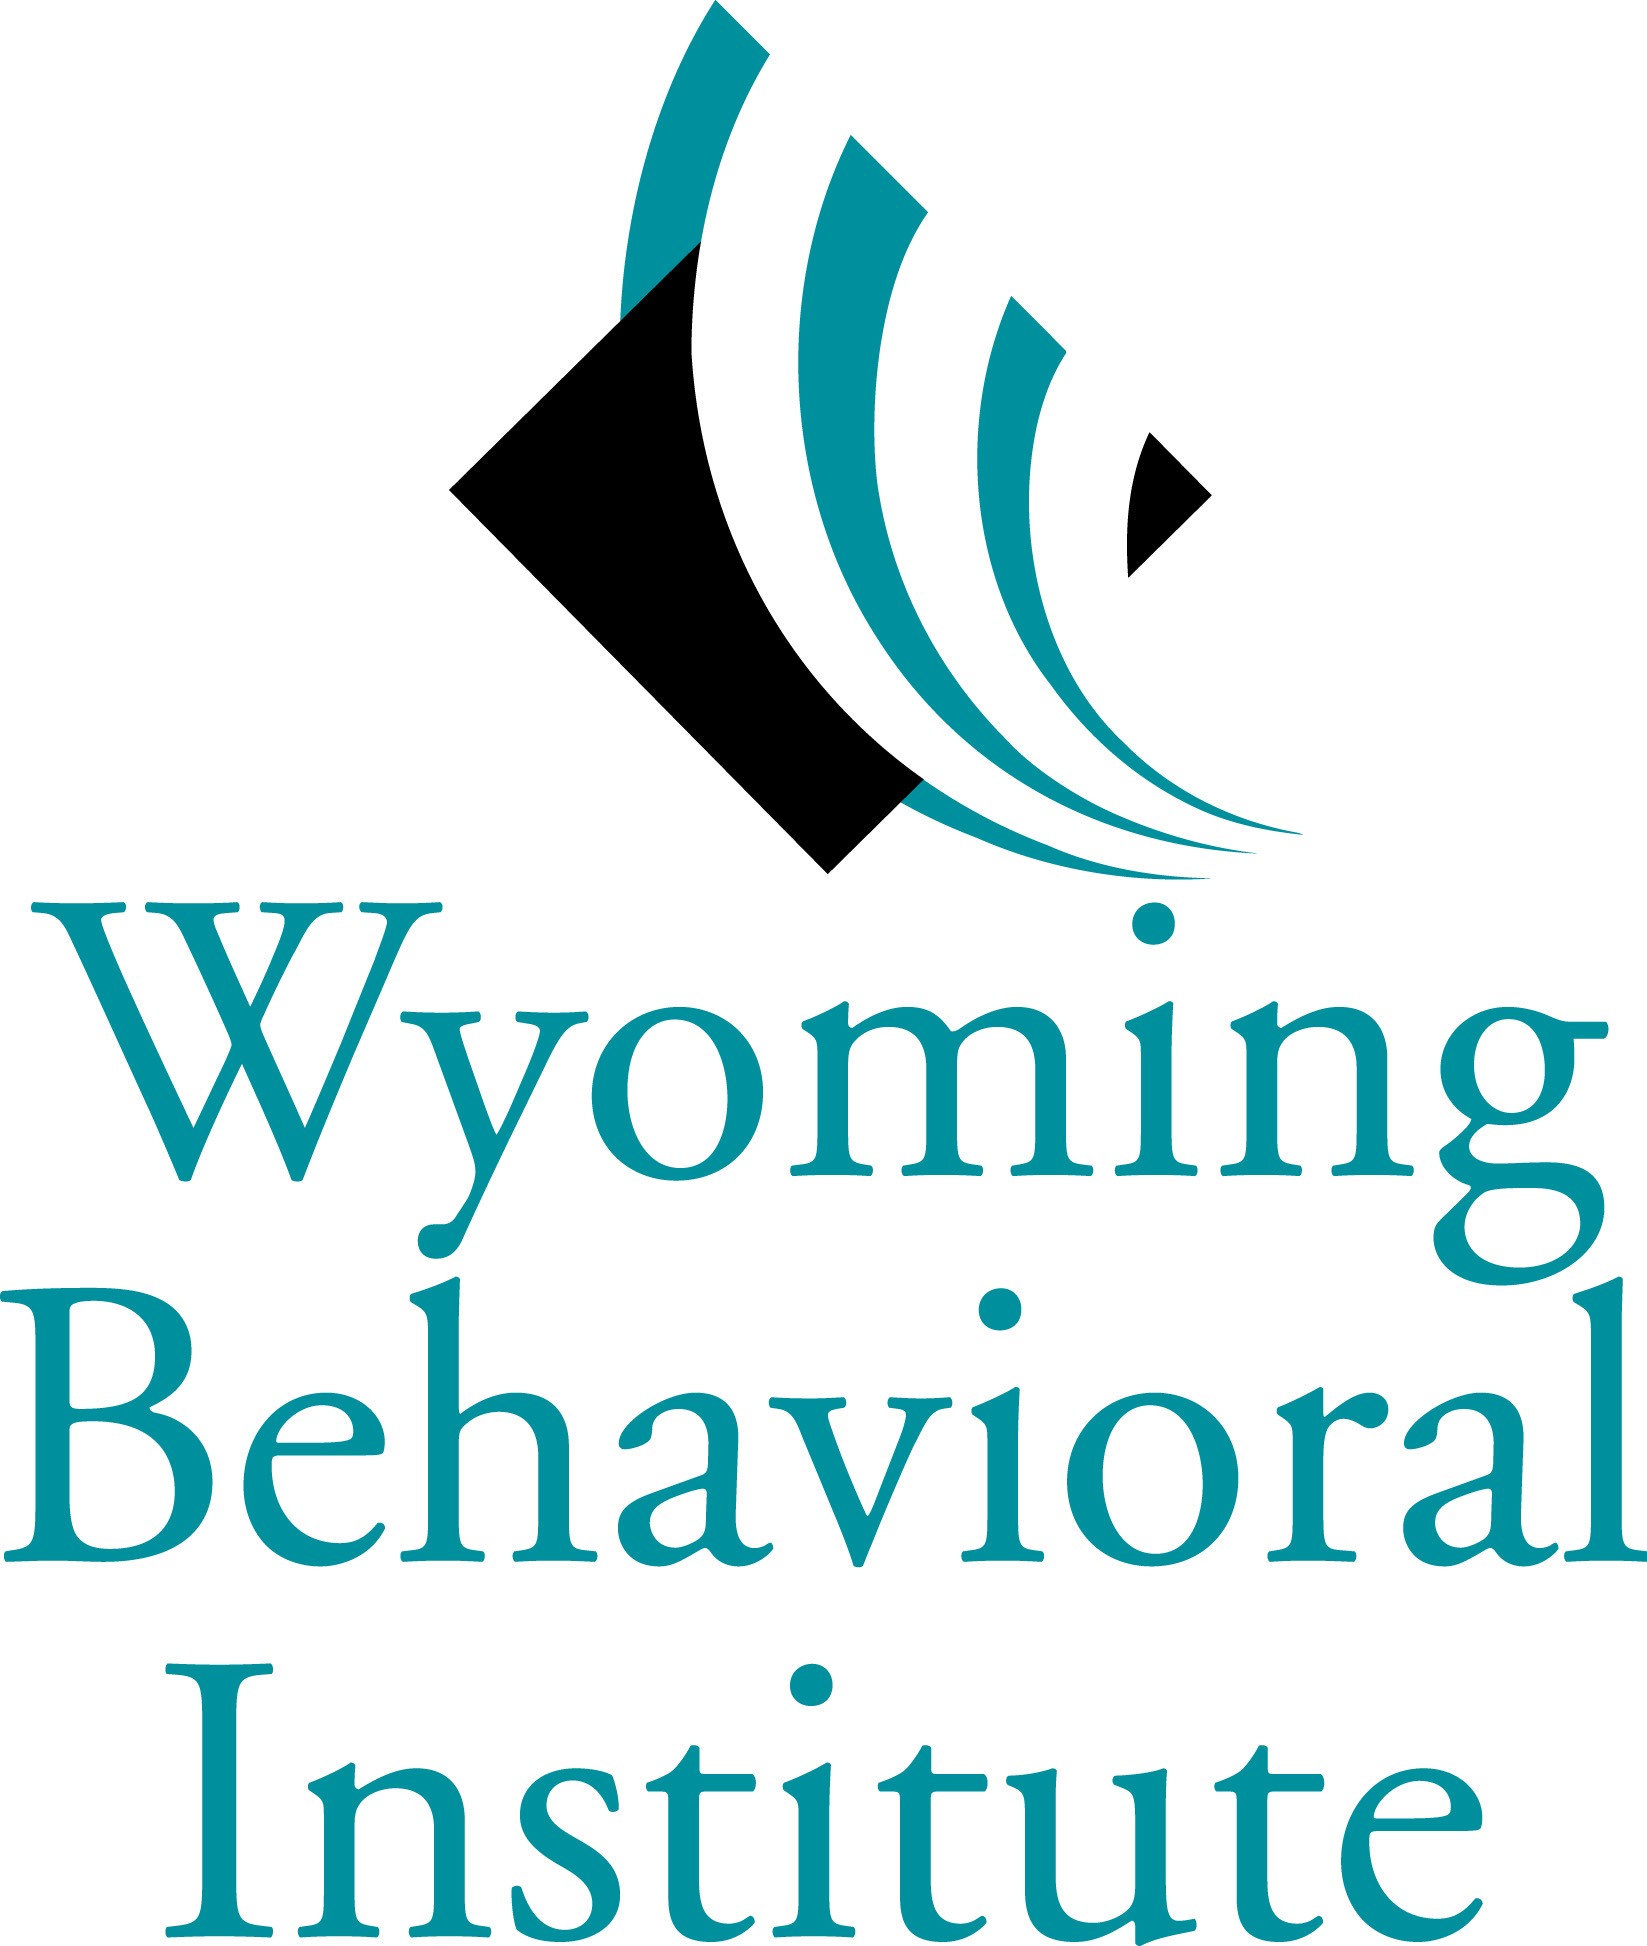 Wyoming Behavioral Institute2521 E. 15th St. Casper, WY 82609 307-237-7444www.wbihelp.com